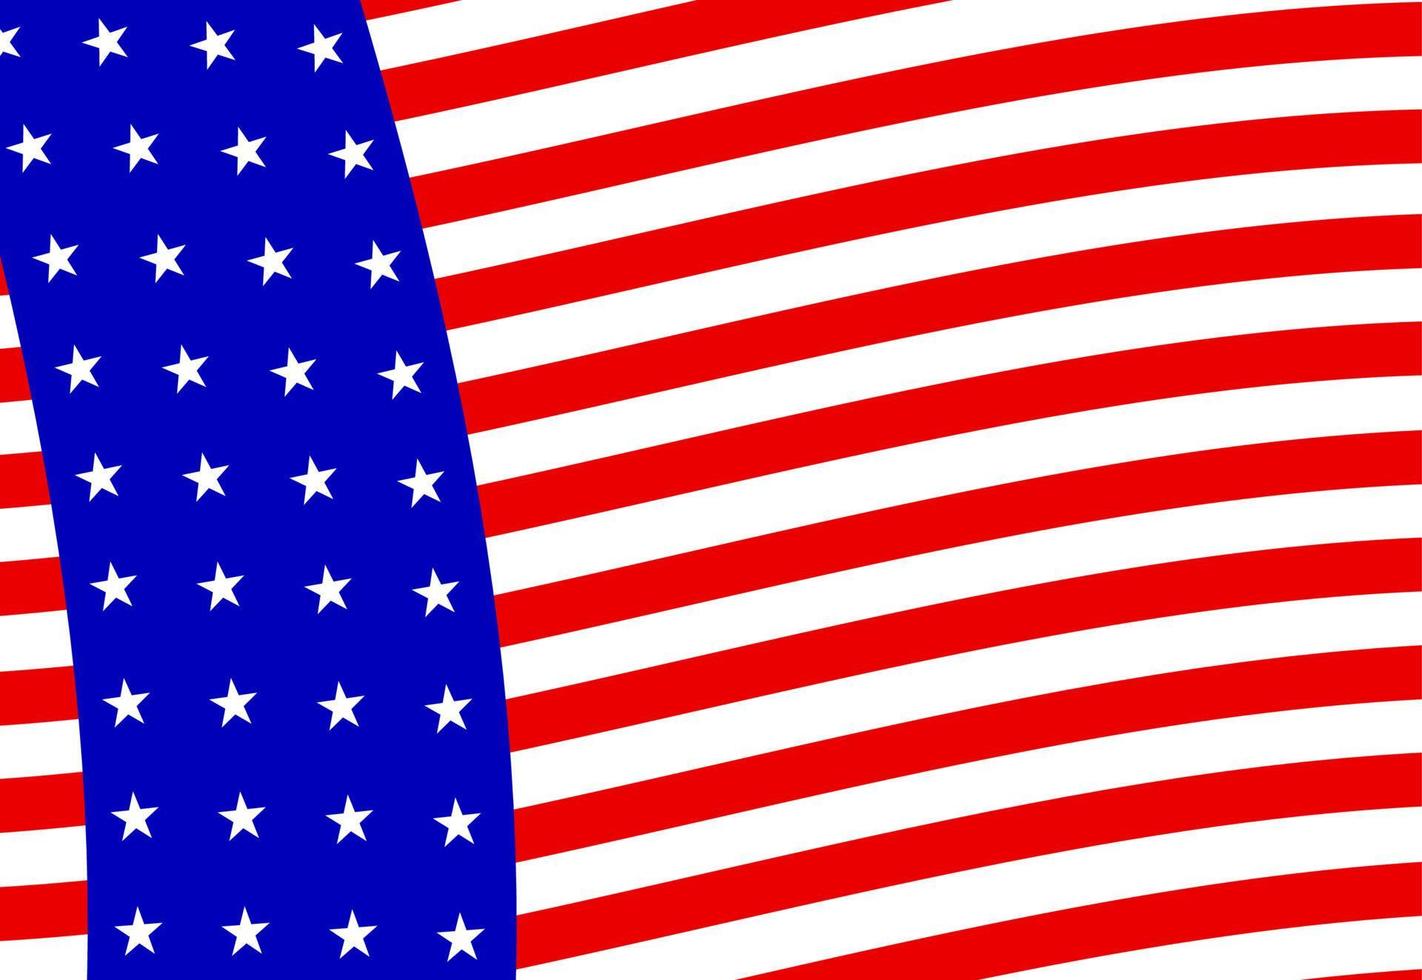 Muster mit Sternen auf rot-weiß gestreiftem Hintergrund. patriotische Kulisse. Vektor-Illustration. als vorlage für geschenkpapier, tapeten, stoff, kleidung, textilien, verpackungen. 4. juli konzept. vektor